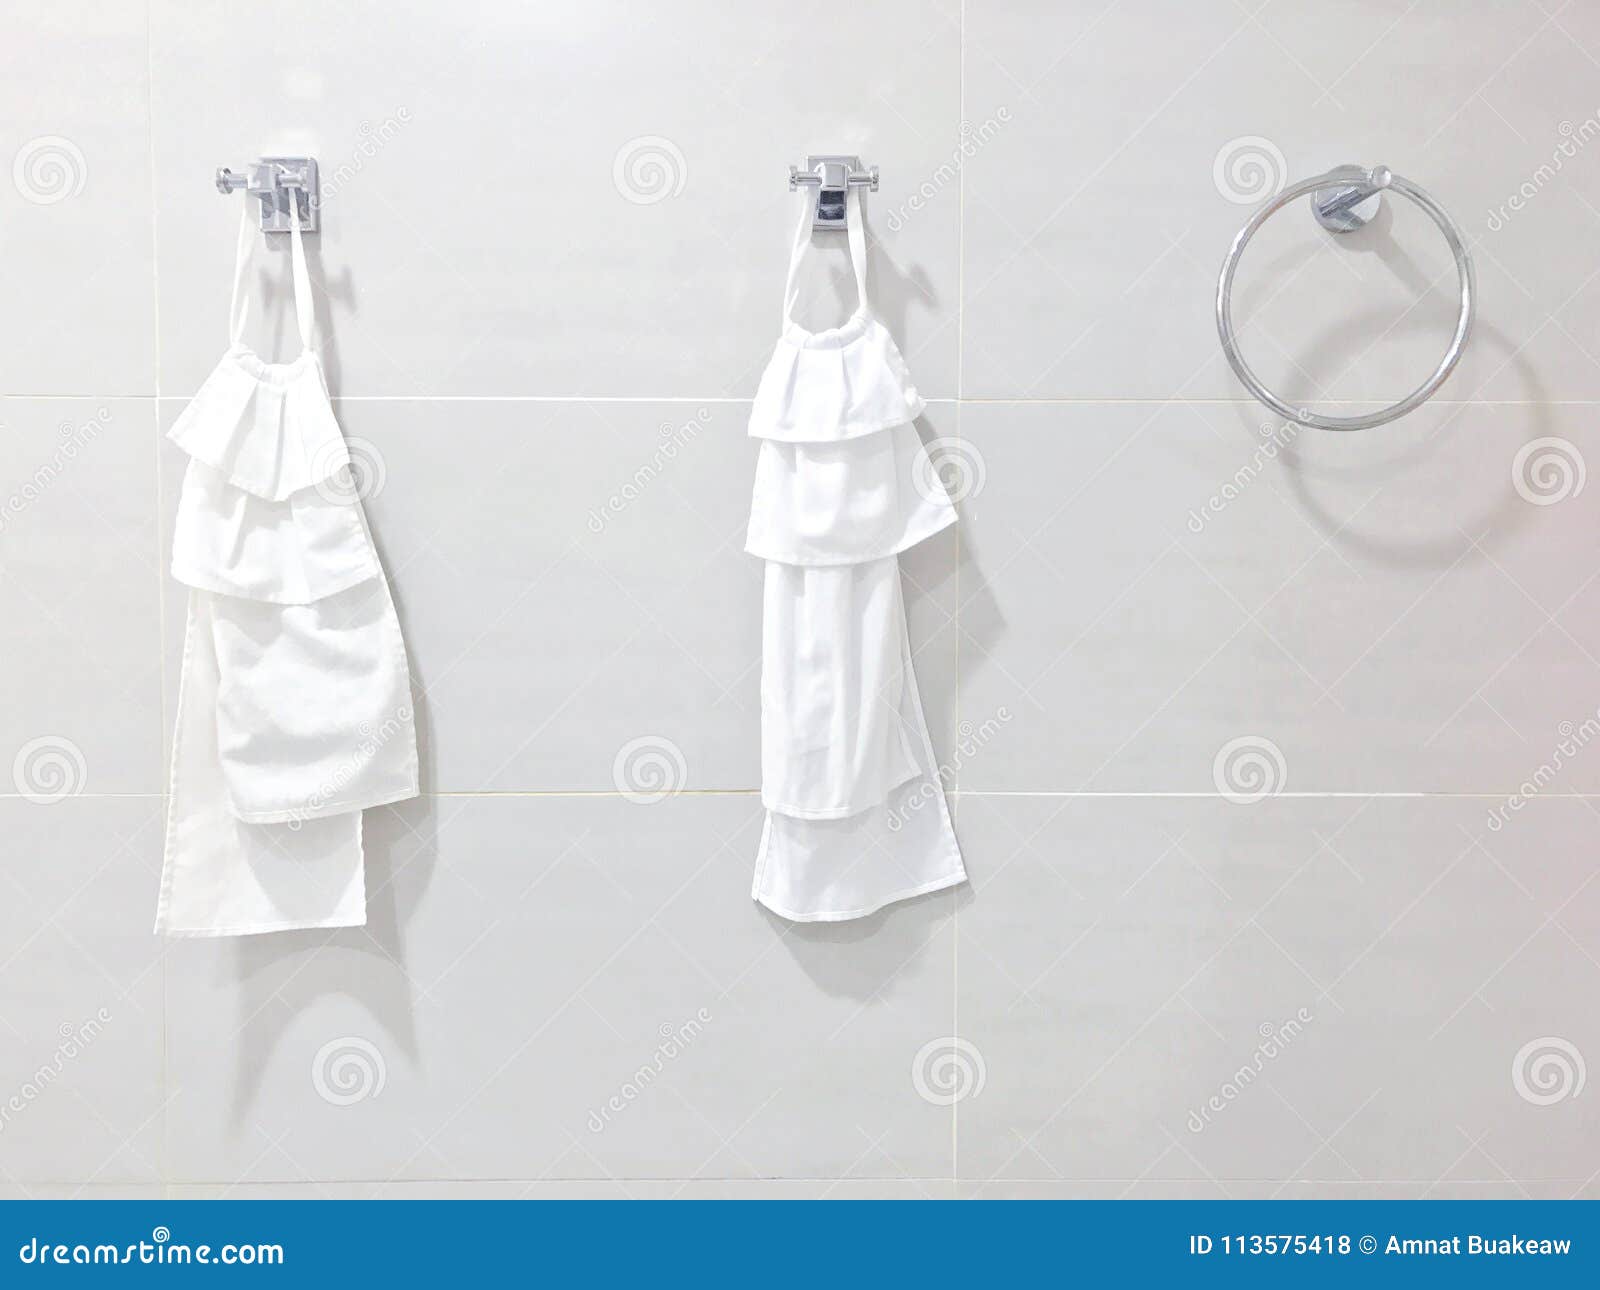 https://thumbs.dreamstime.com/z/towel-rail-stainless-white-hanging-loop-bathroom-wall-modern-cloth-towels-113575418.jpg